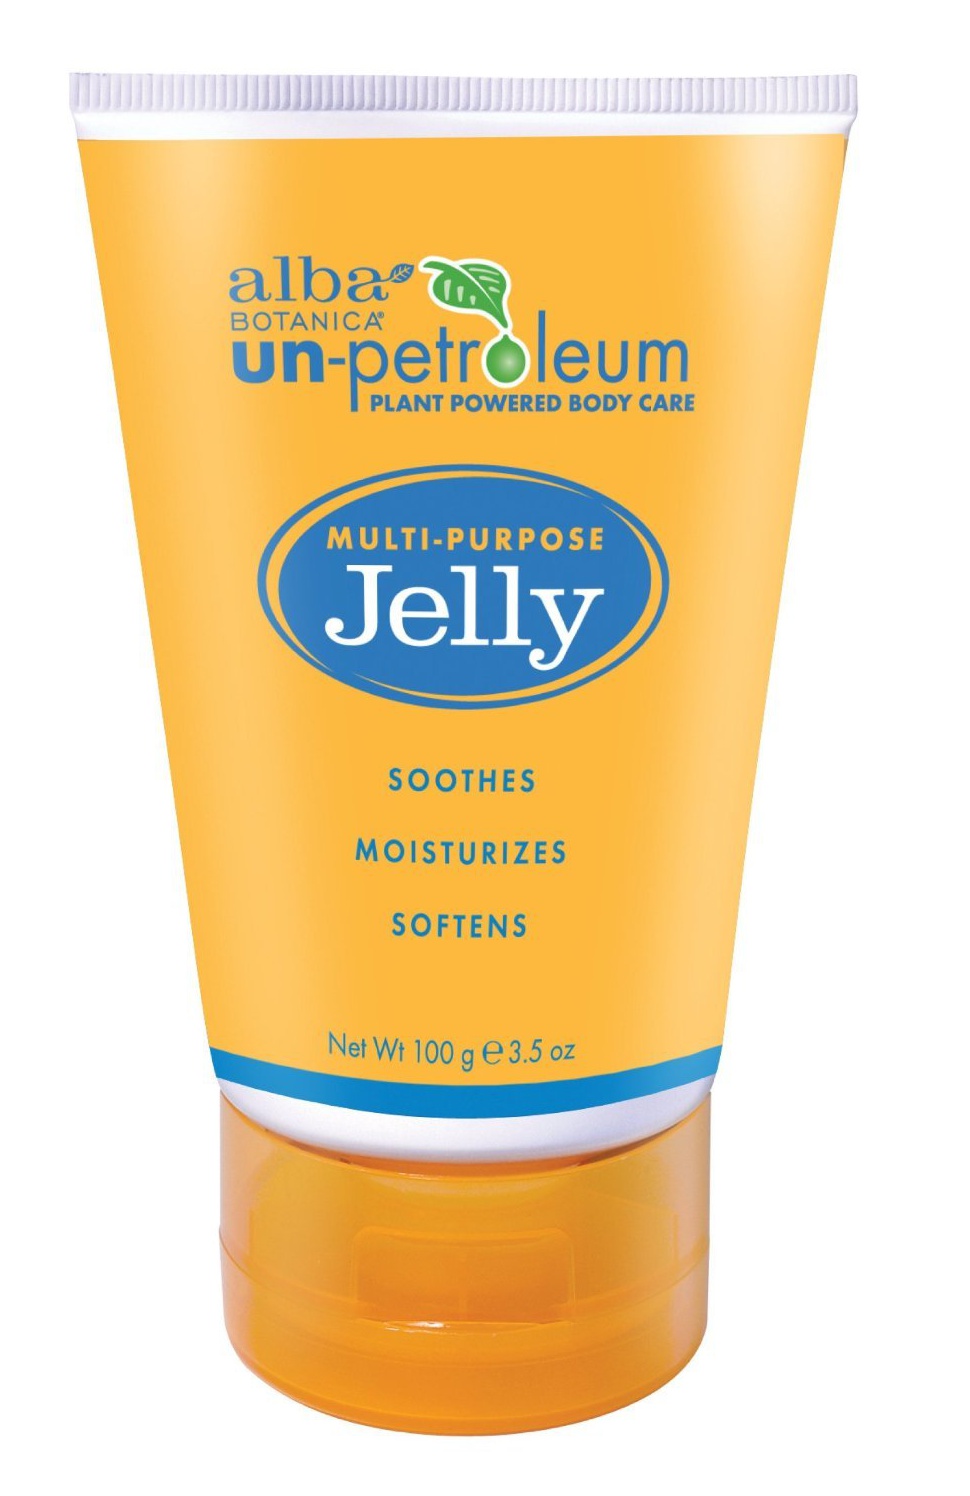 Alba Botanica Un-Petroleum Multi-Purpose Jelly